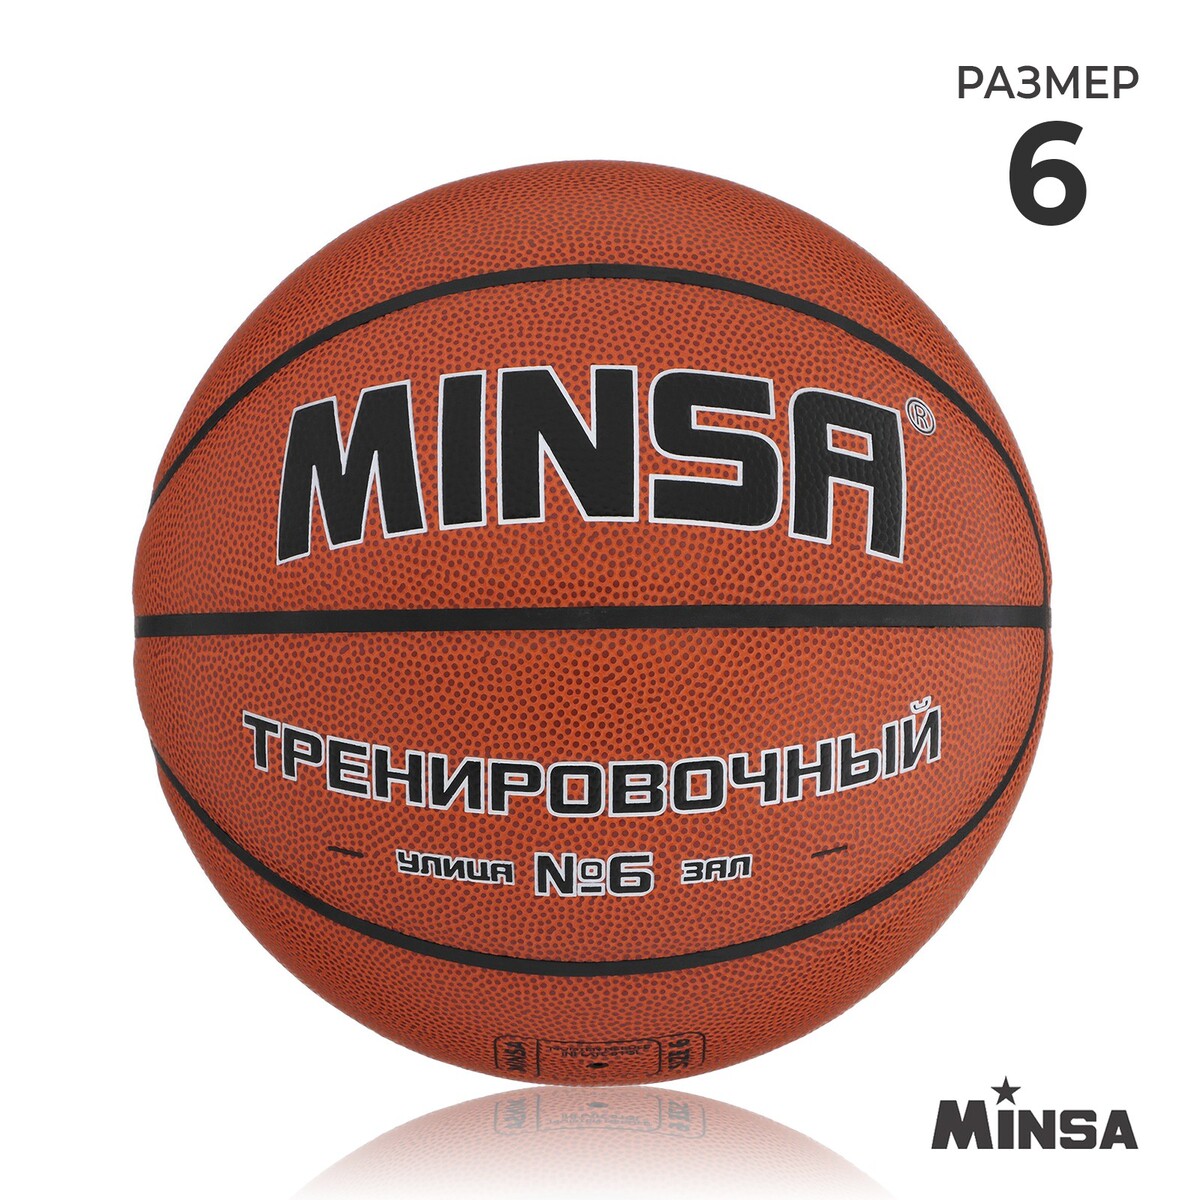 Баскетбольный мяч minsa, тренировочный, pu, клееный, 8 панелей, р. 6 мяч баскетбольный minsa sport пвх клееный 8 панелей р 7